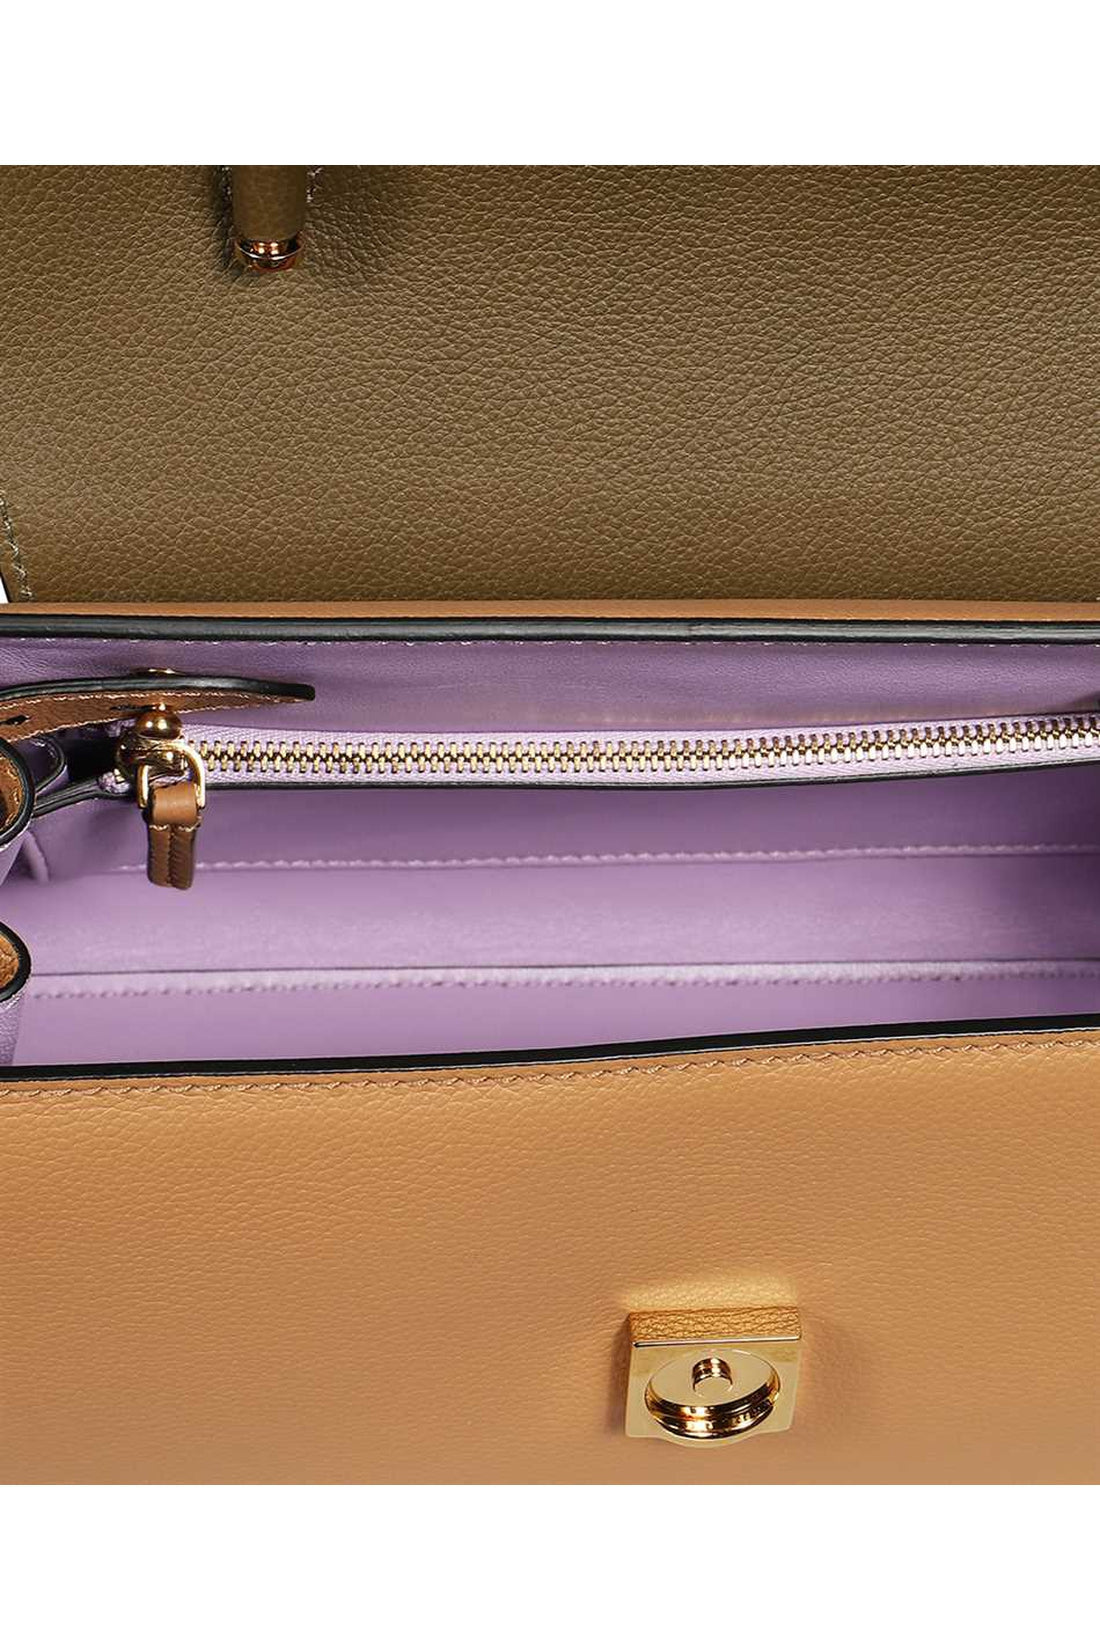 Versace-OUTLET-SALE-La Medusa leather handbag-ARCHIVIST